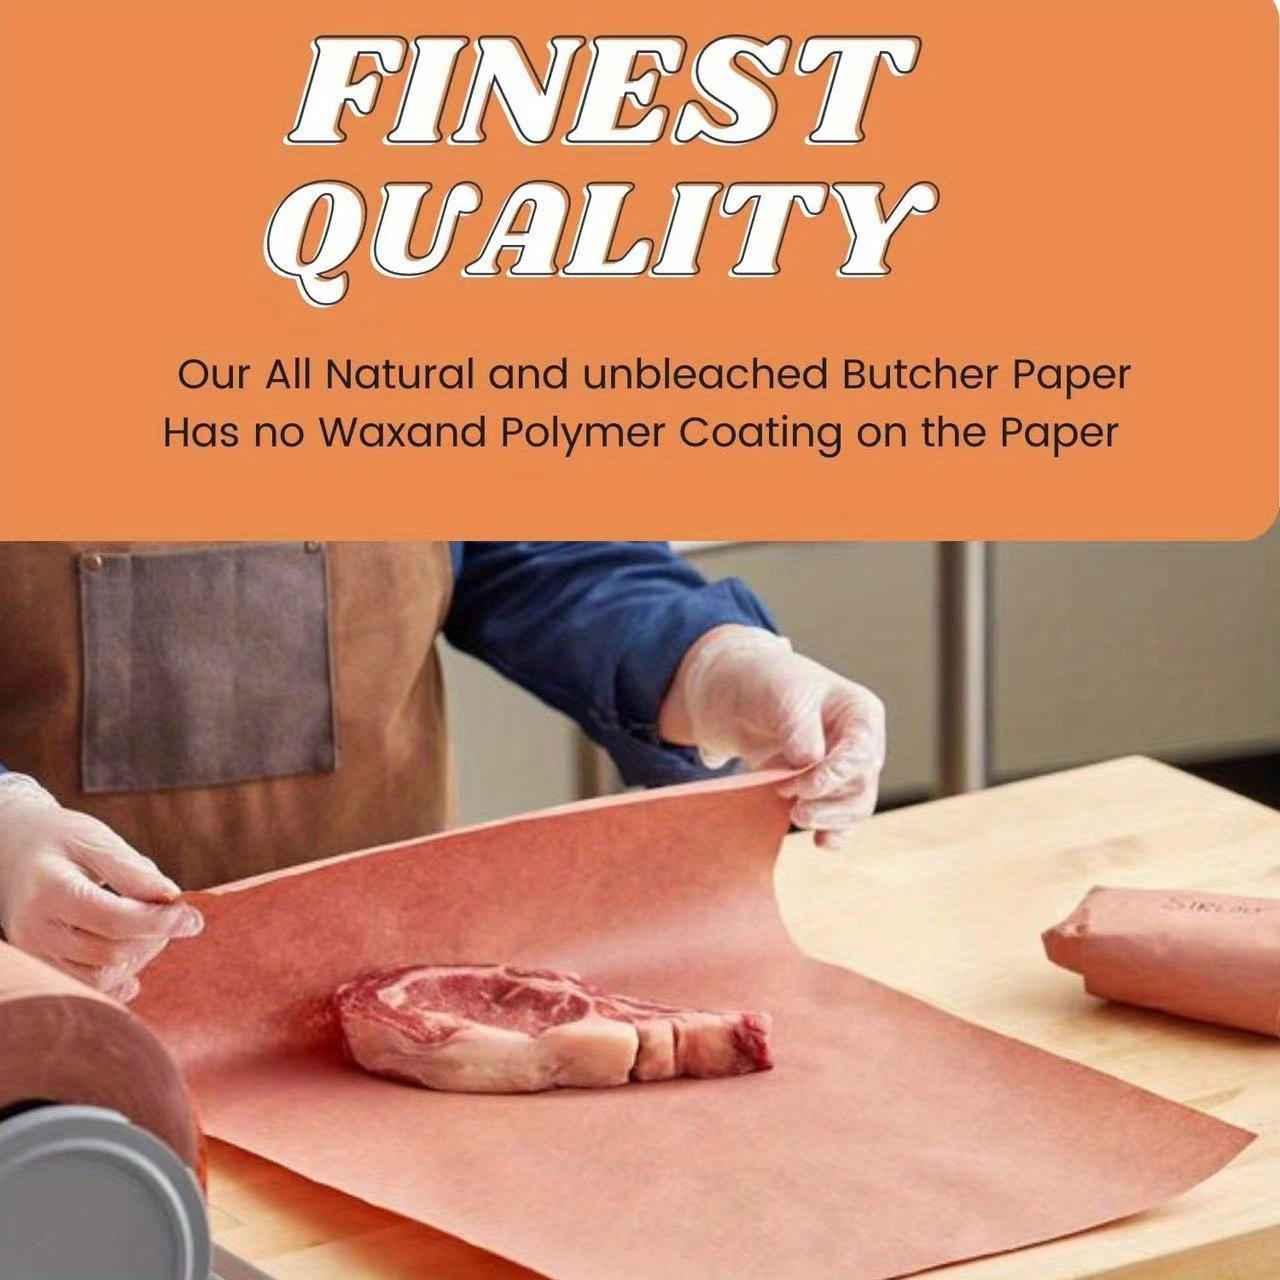  Smokin' Pink Kraft Butcher Paper Roll